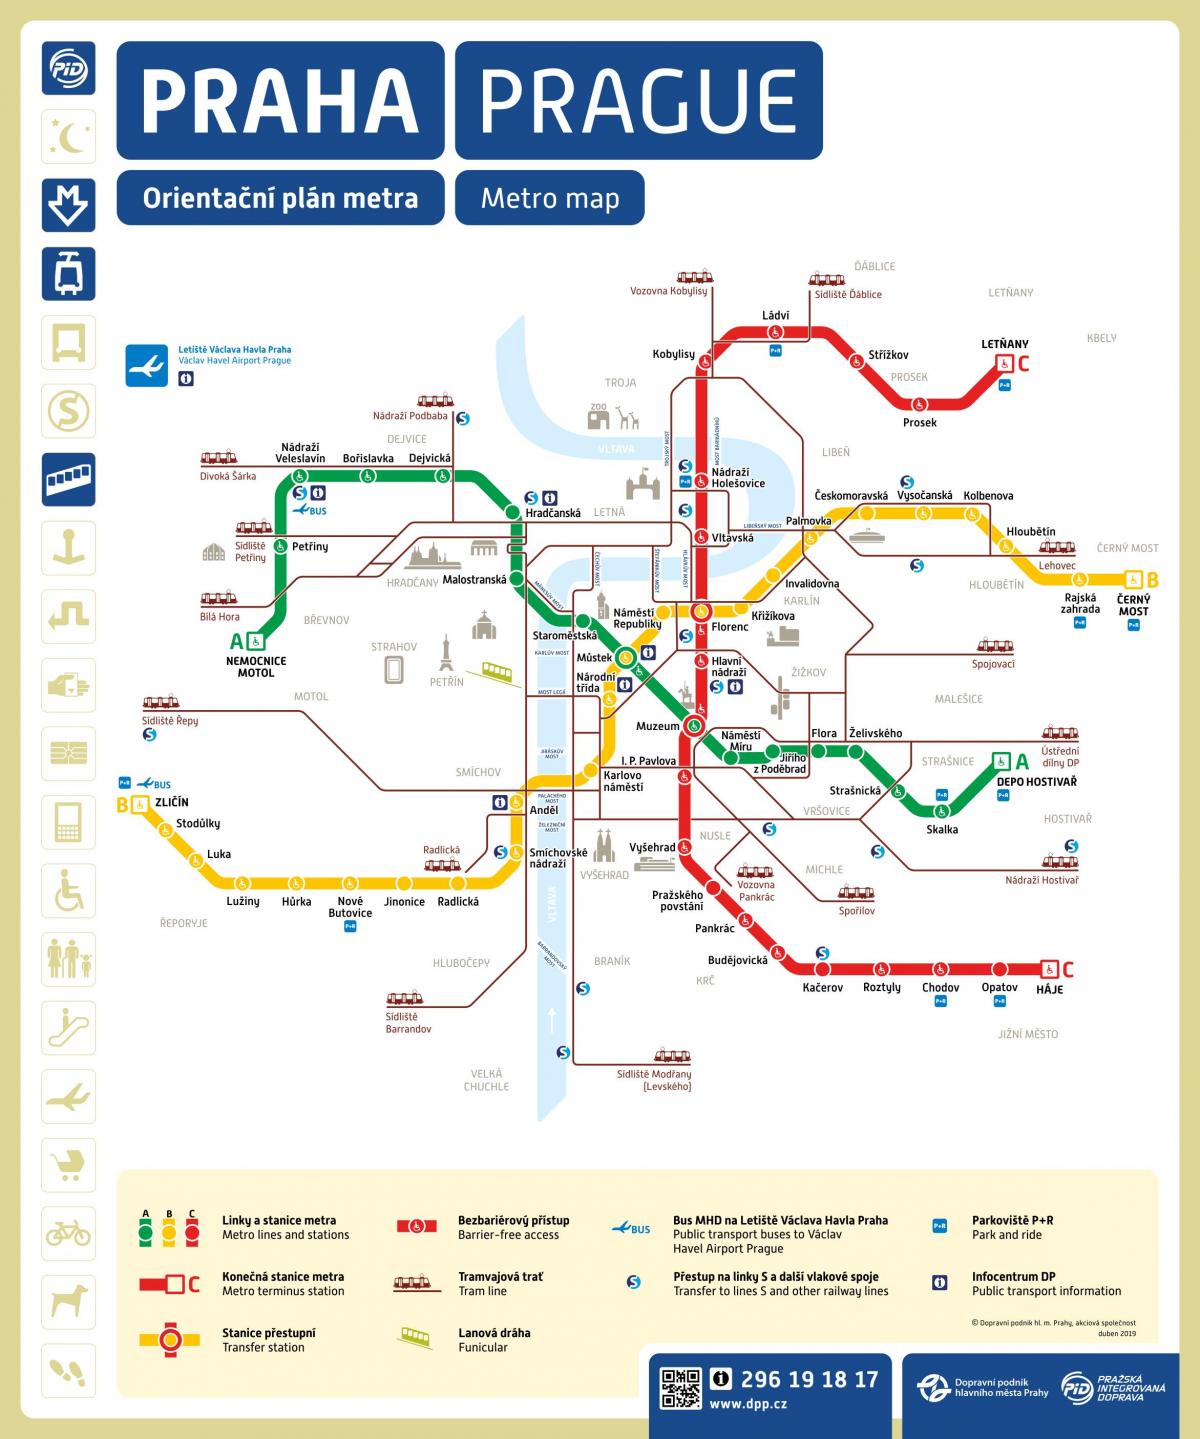 プラハの地下鉄駅の地図